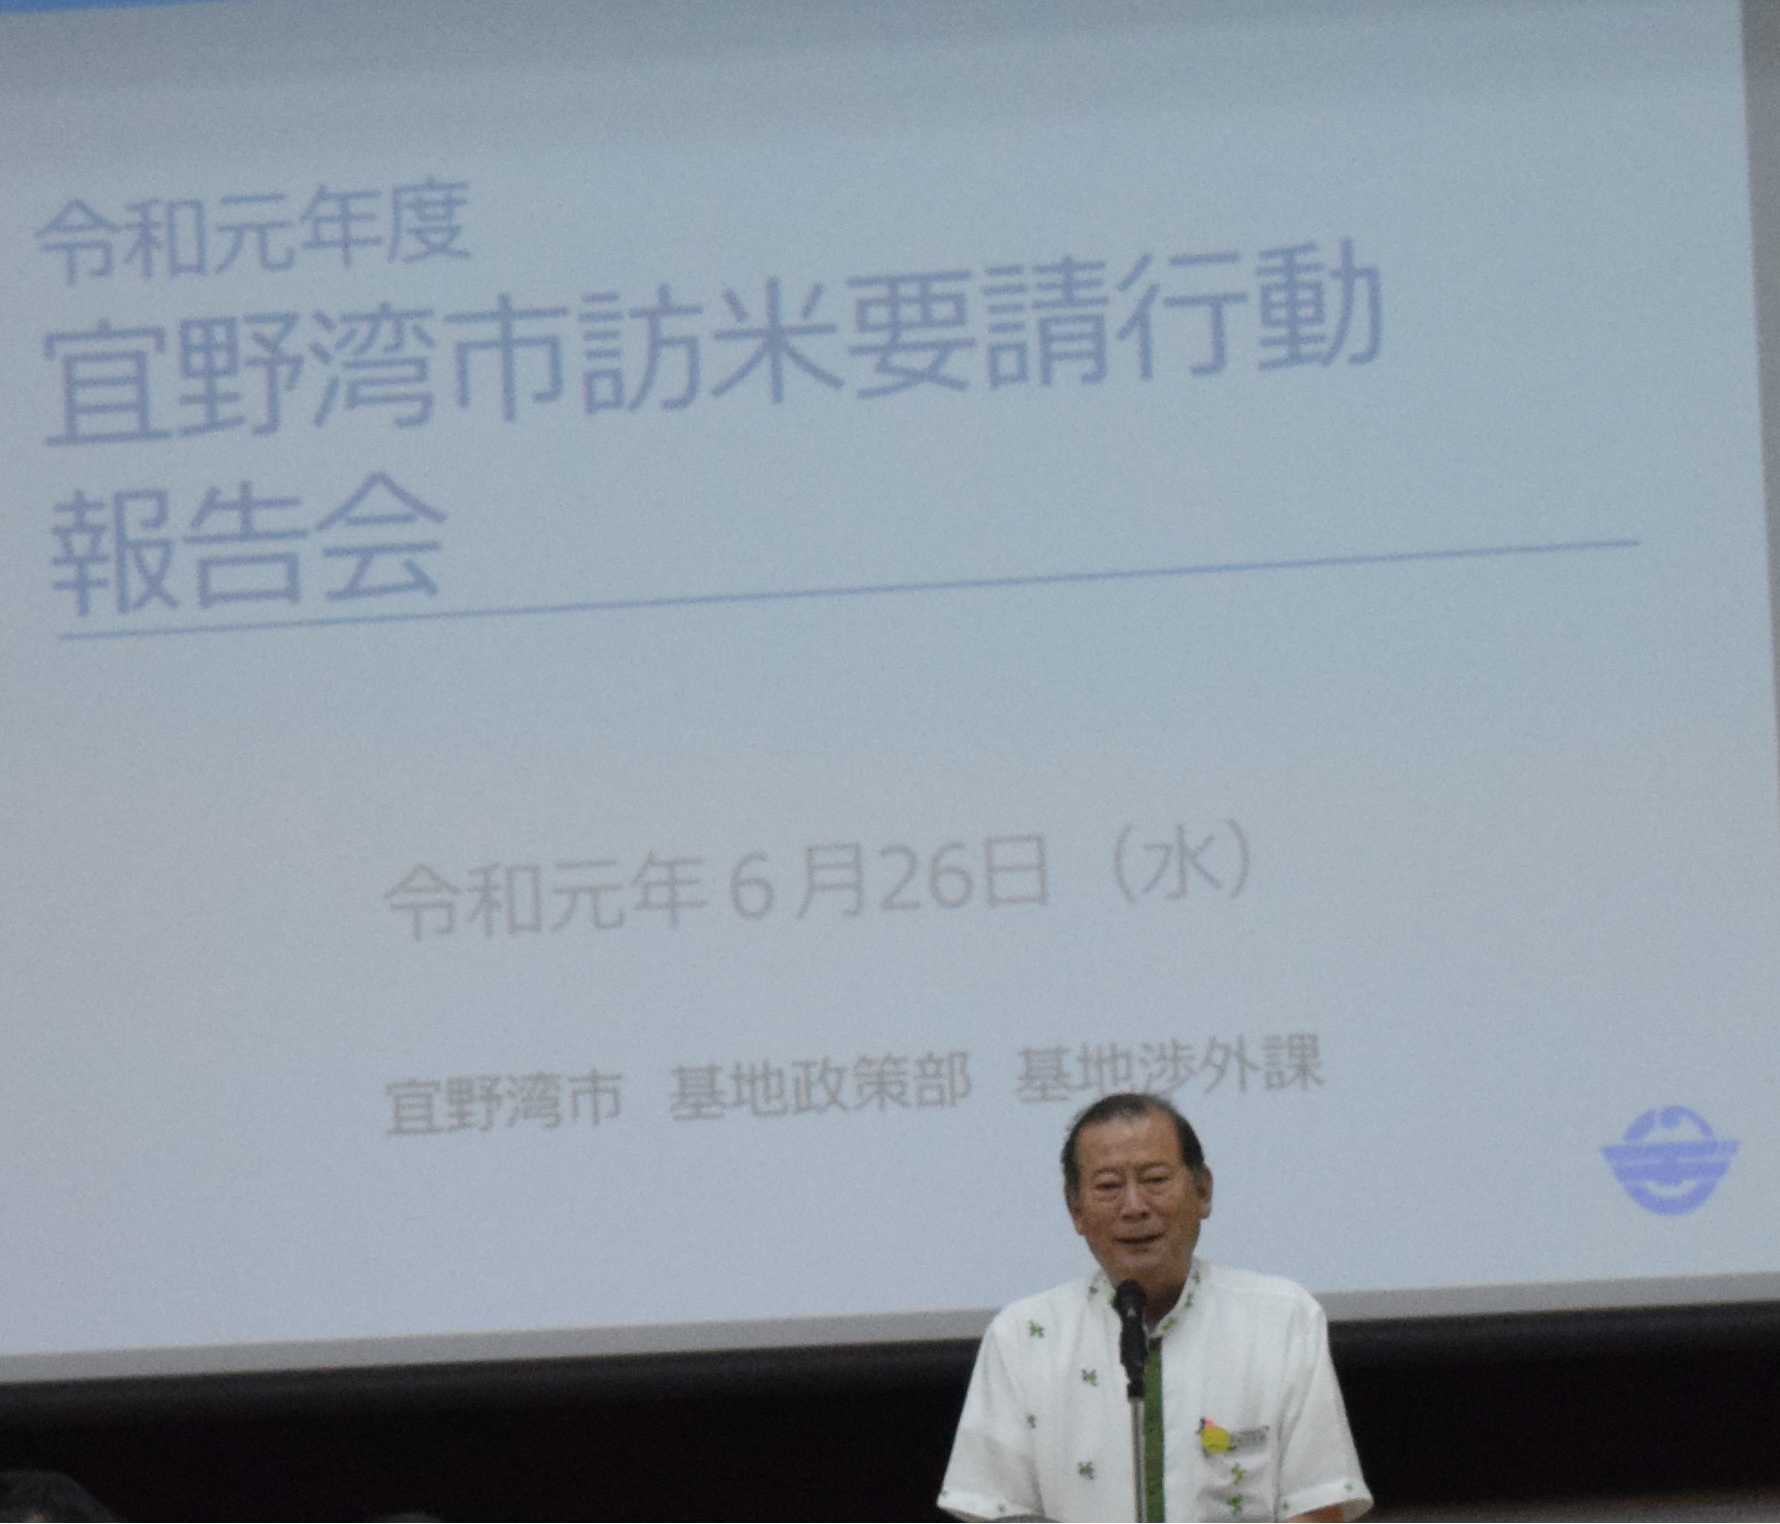 後ろには大きなスクリーンに資料が映し出されその前で松川市長が報告をしている写真